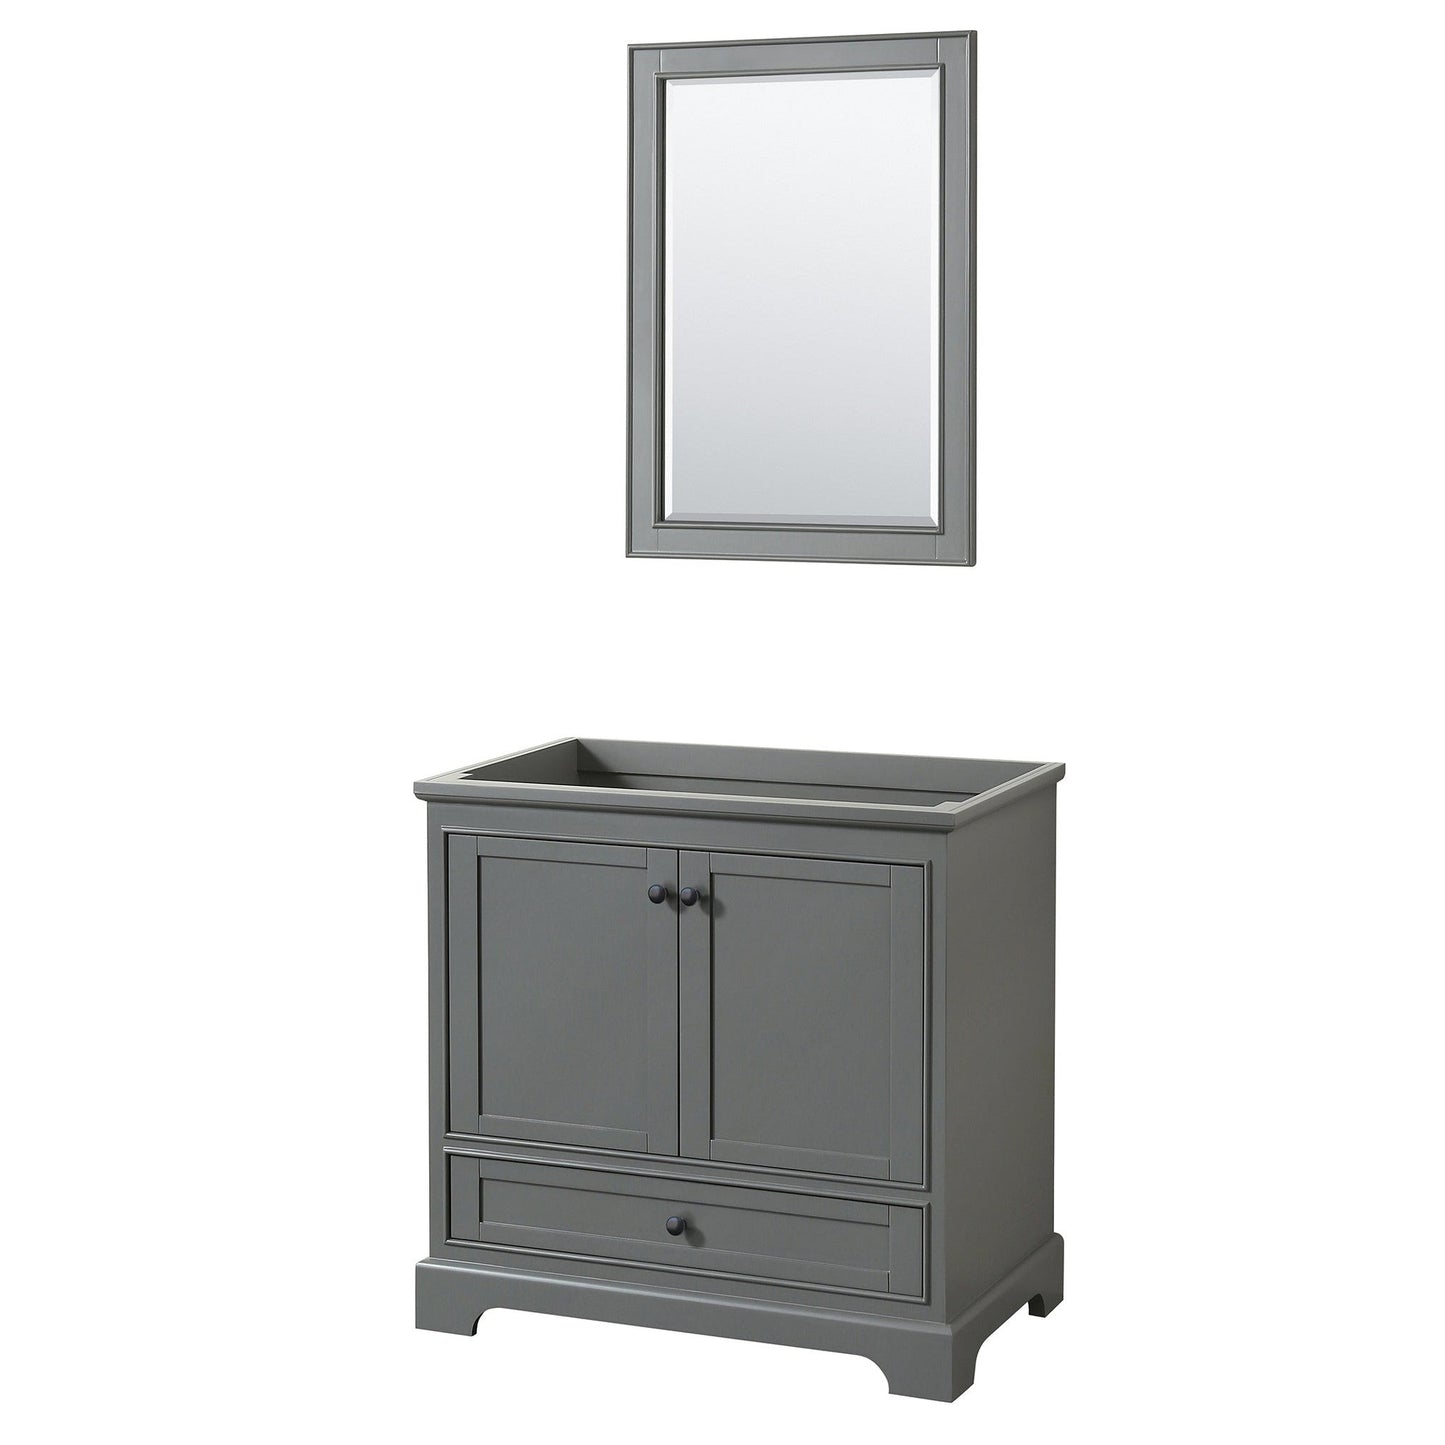 Deborah 36" Single Bathroom Vanity in Dark Gray, No Countertop, No Sink, Matte Black Trim, 24" Mirror